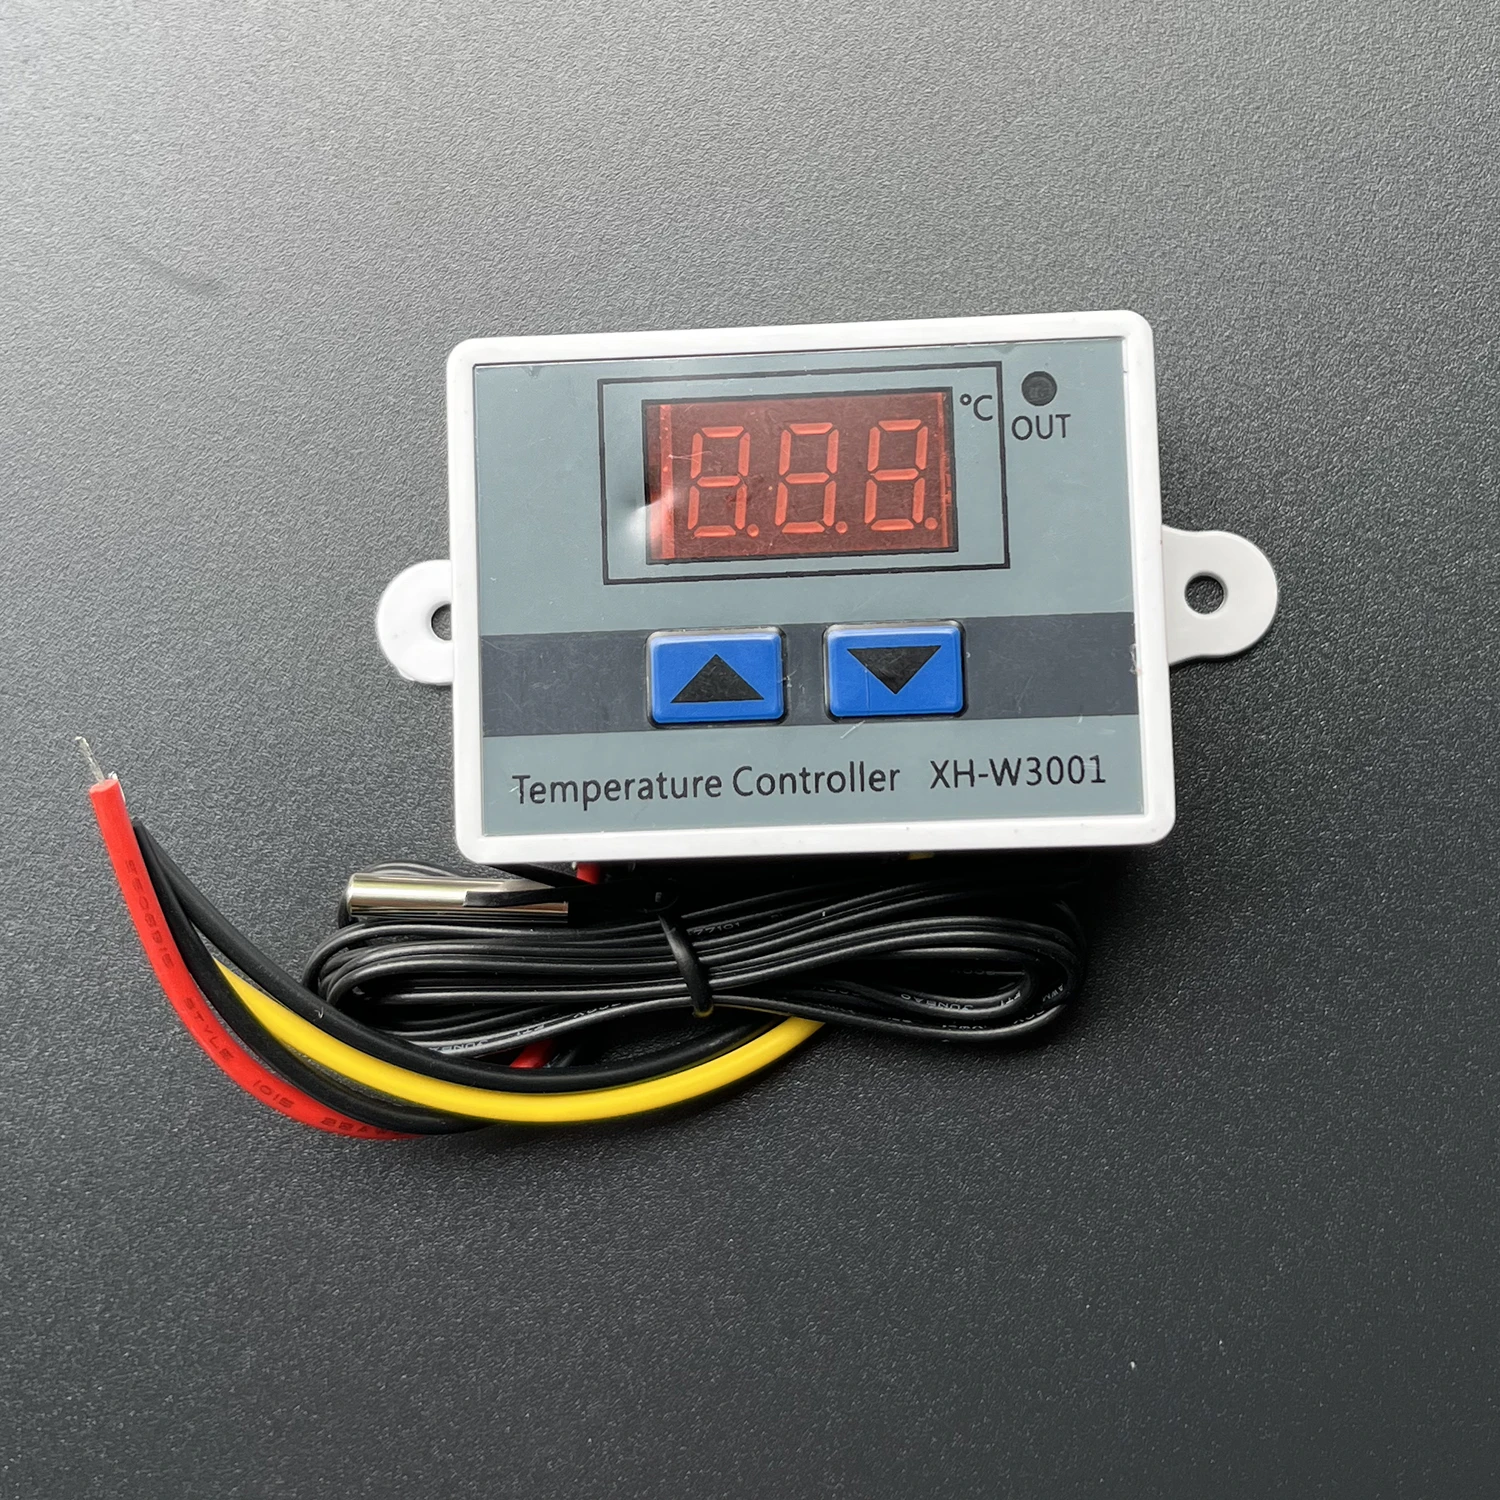 

Digital LED Thermostat 220V Digital Led Temperature Controller 10A Thermostat Switch Probe Xh-w3002 Xh-w3001 12V 24V 110V-220V